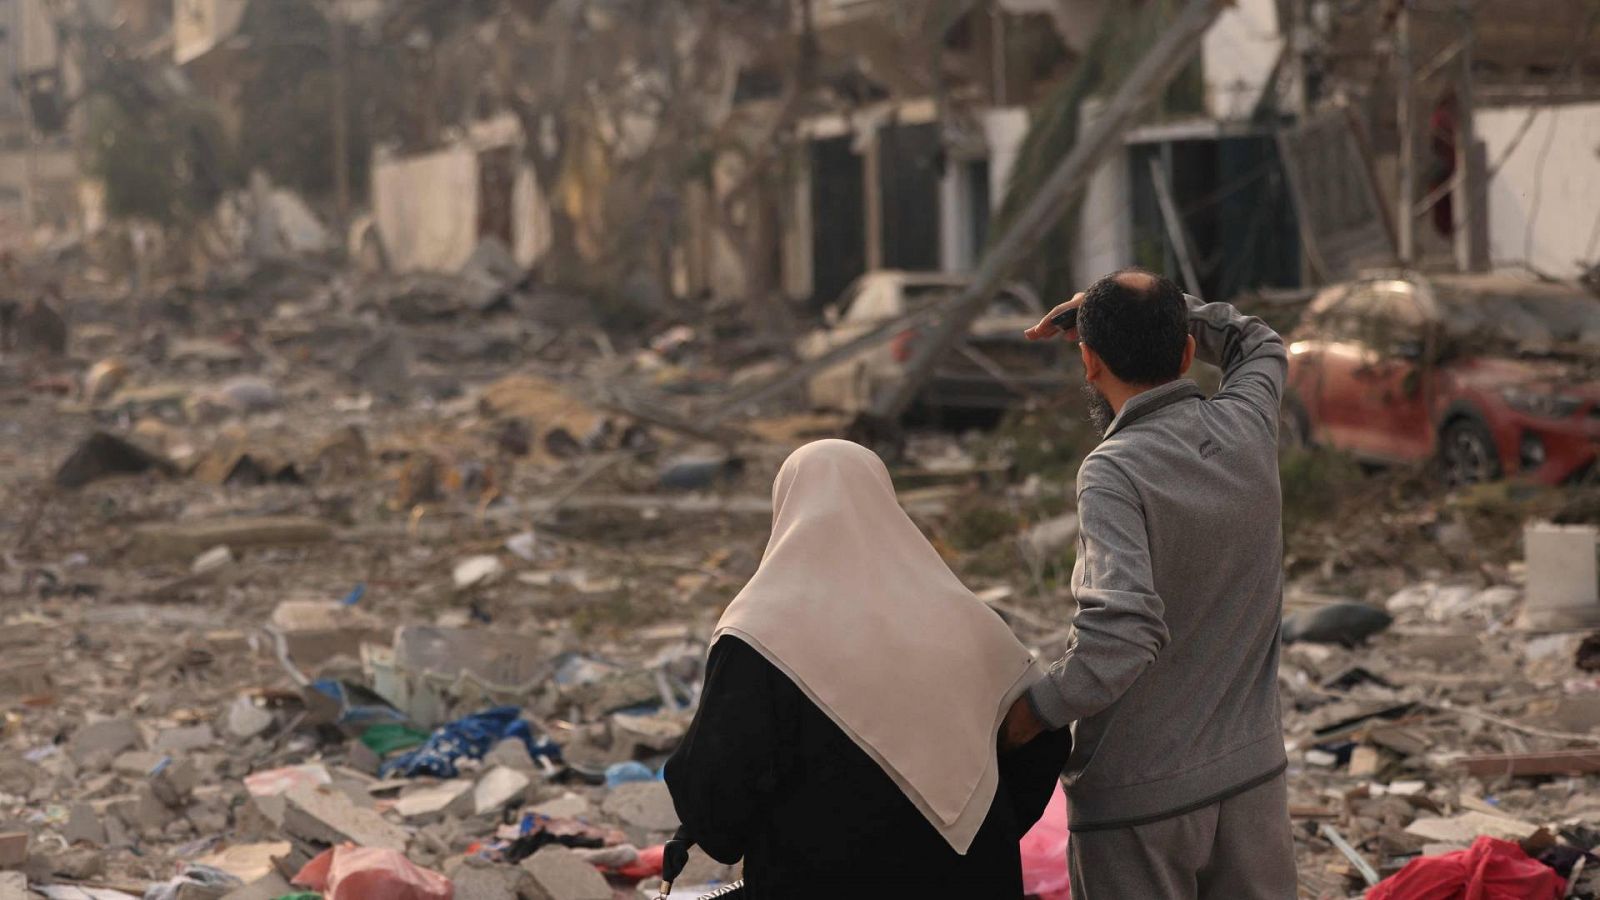 Guerra de Israel: Dos personas inspeccionan la destrucción masiva provocada por los ataques aéreos israelíes en Gaza